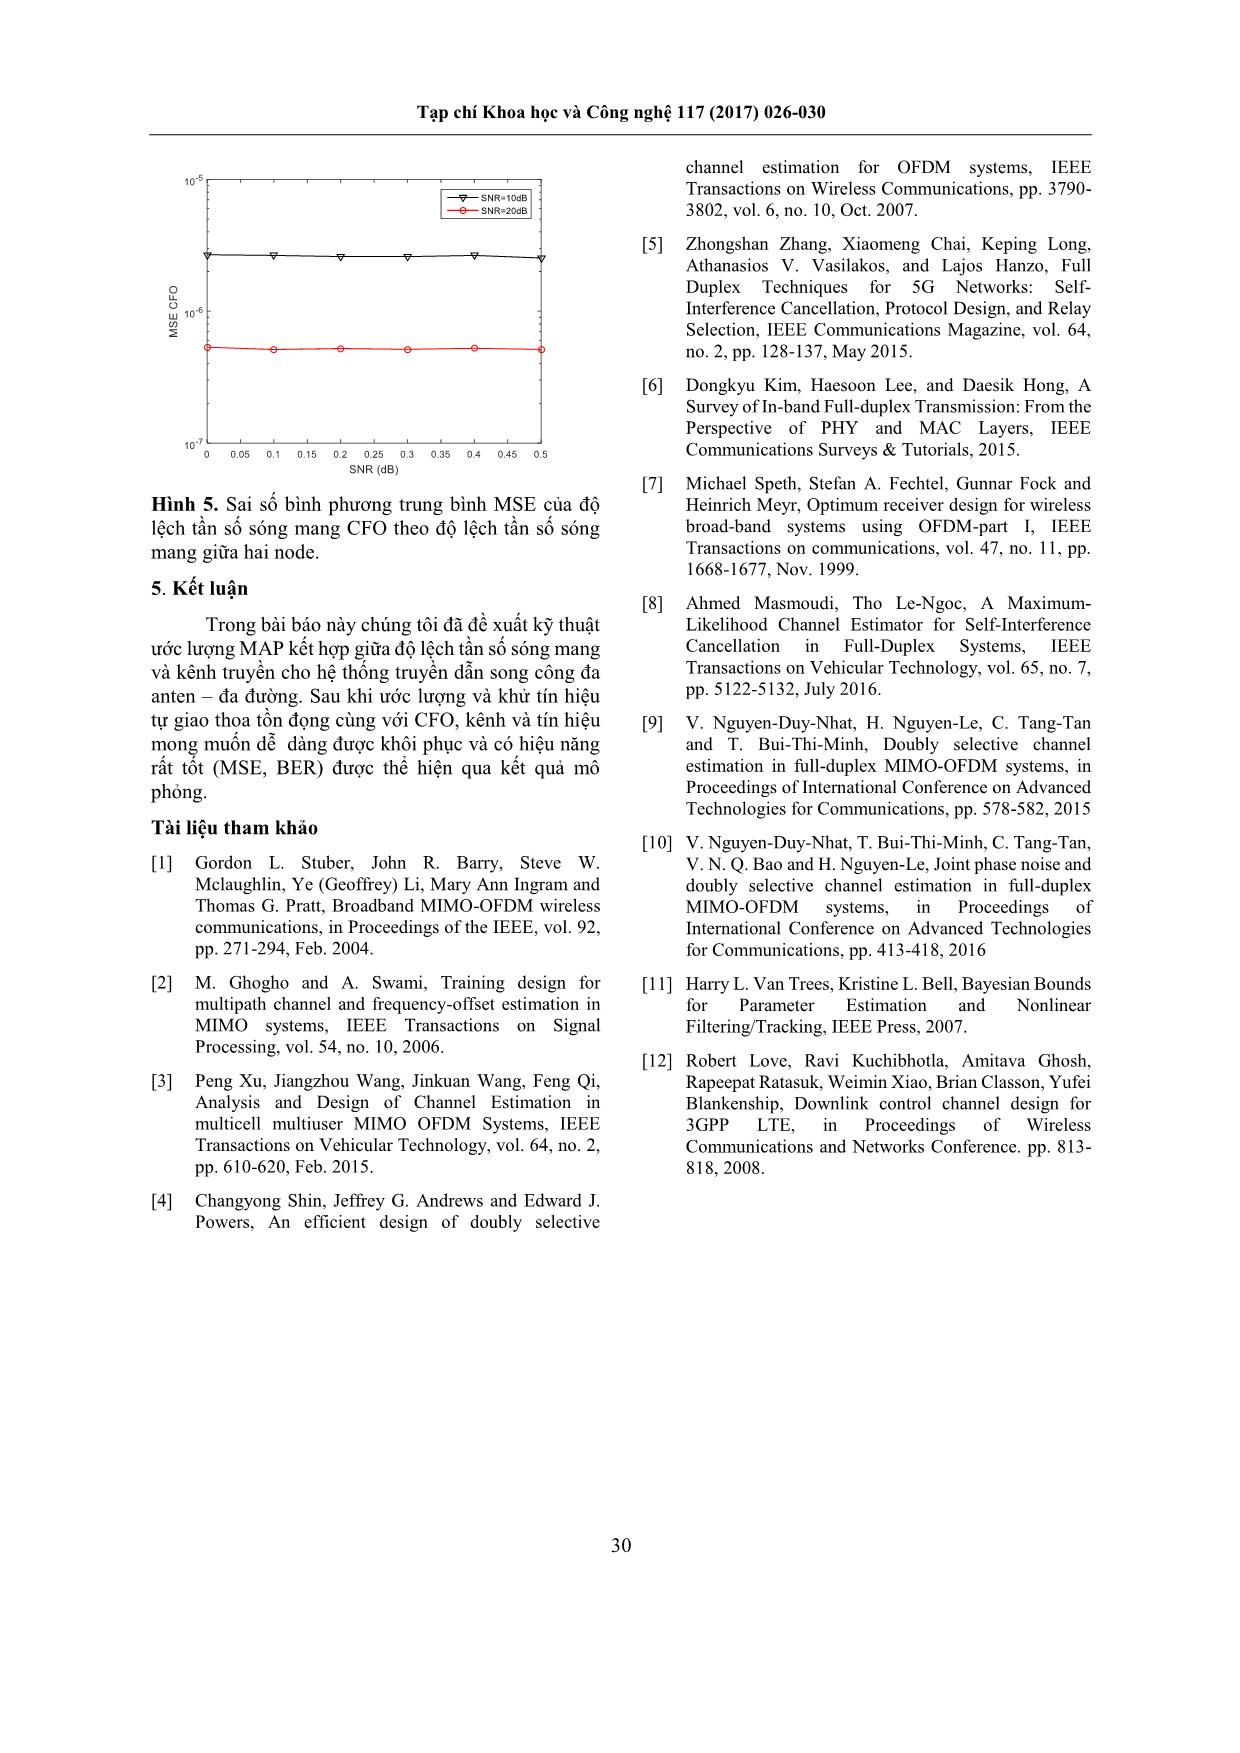 Kỹ thuật ước lượng MAP kết hợp giữa độ lệch tần số sóng mang và kênh truyền trong hệ thống truyền dẫn MIMO-OFDM song công trang 5